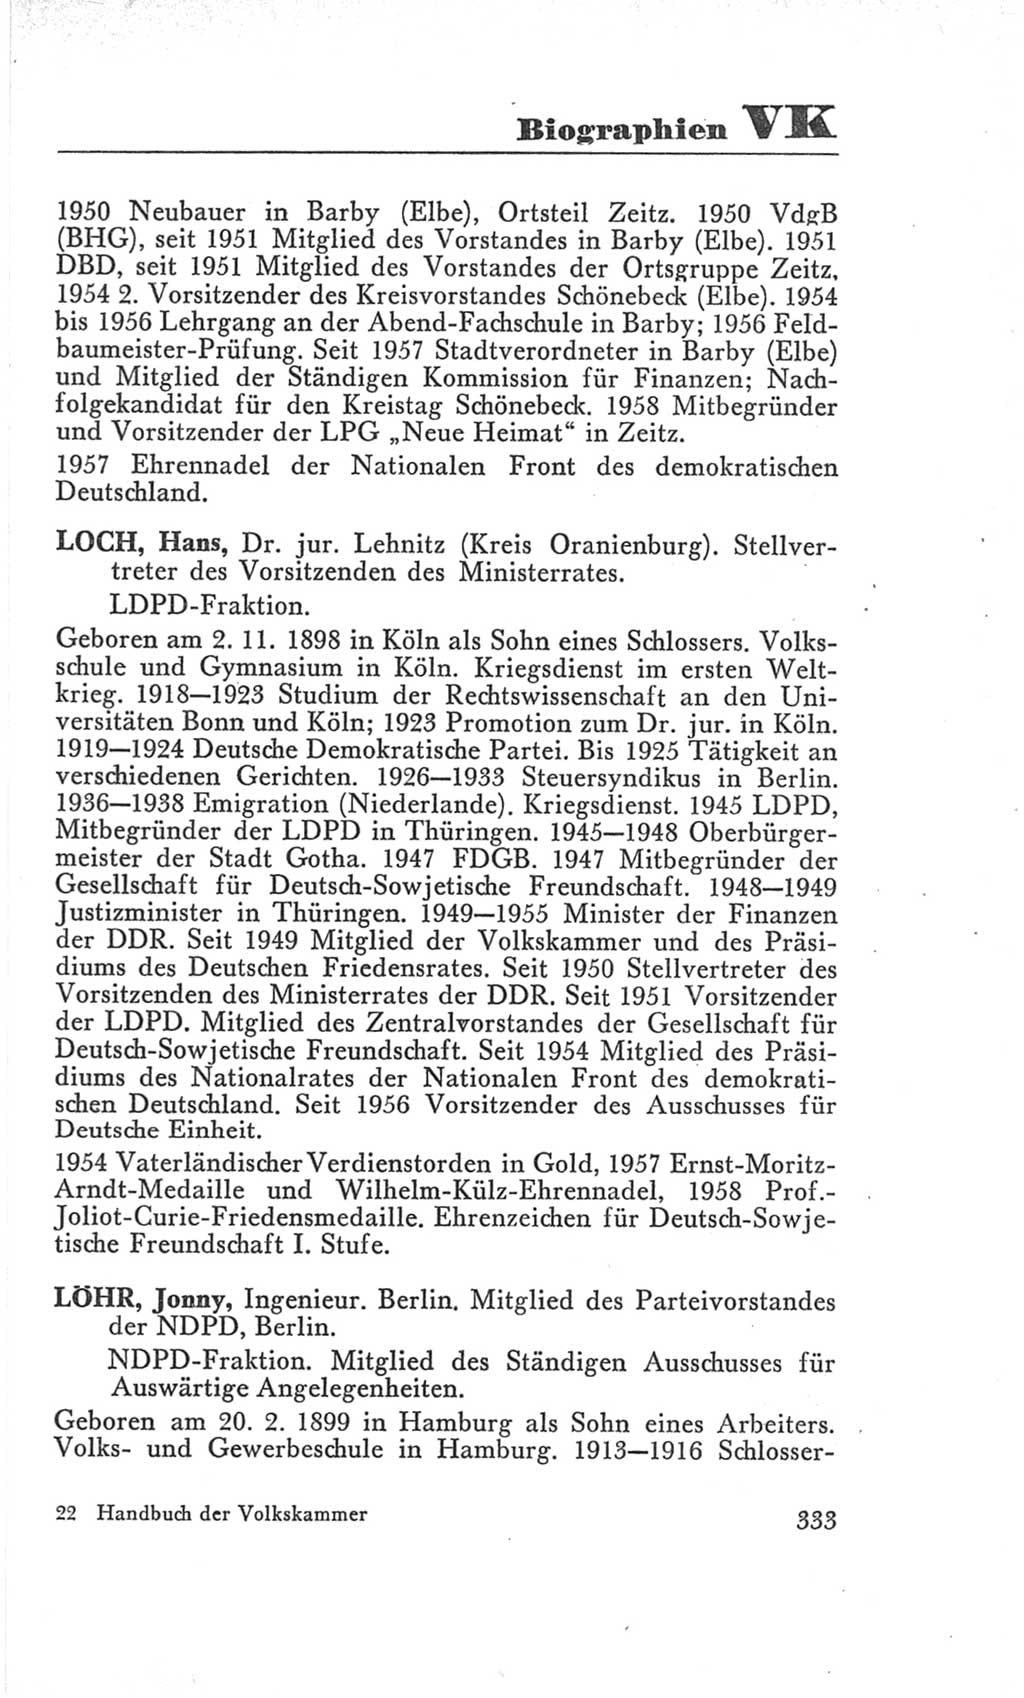 Handbuch der Volkskammer (VK) der Deutschen Demokratischen Republik (DDR), 3. Wahlperiode 1958-1963, Seite 333 (Hdb. VK. DDR 3. WP. 1958-1963, S. 333)